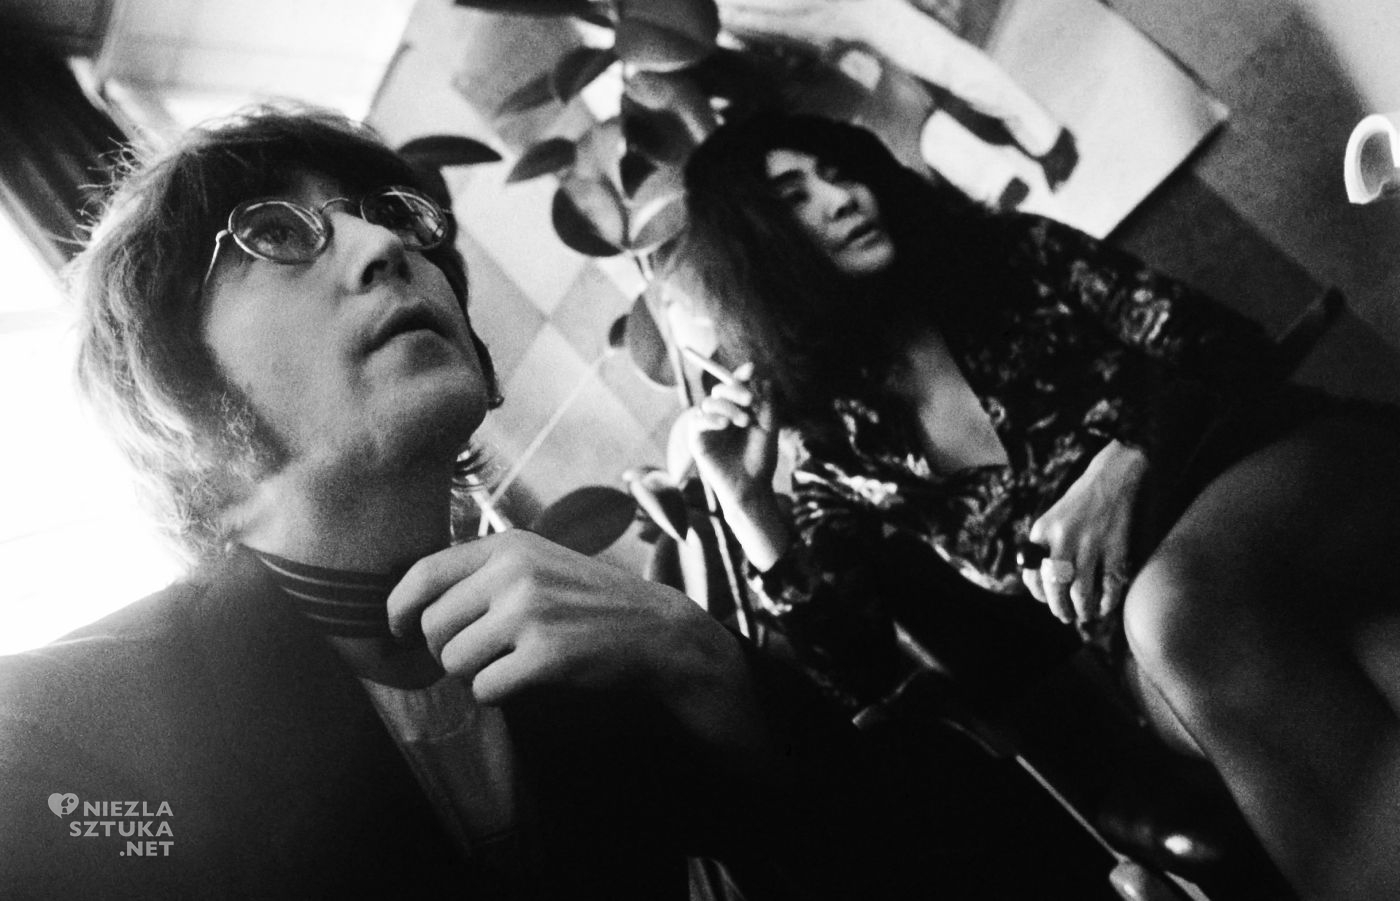 Yoko Ono, John Lennon, artystka, kobiety w sztuce, niezła sztuka